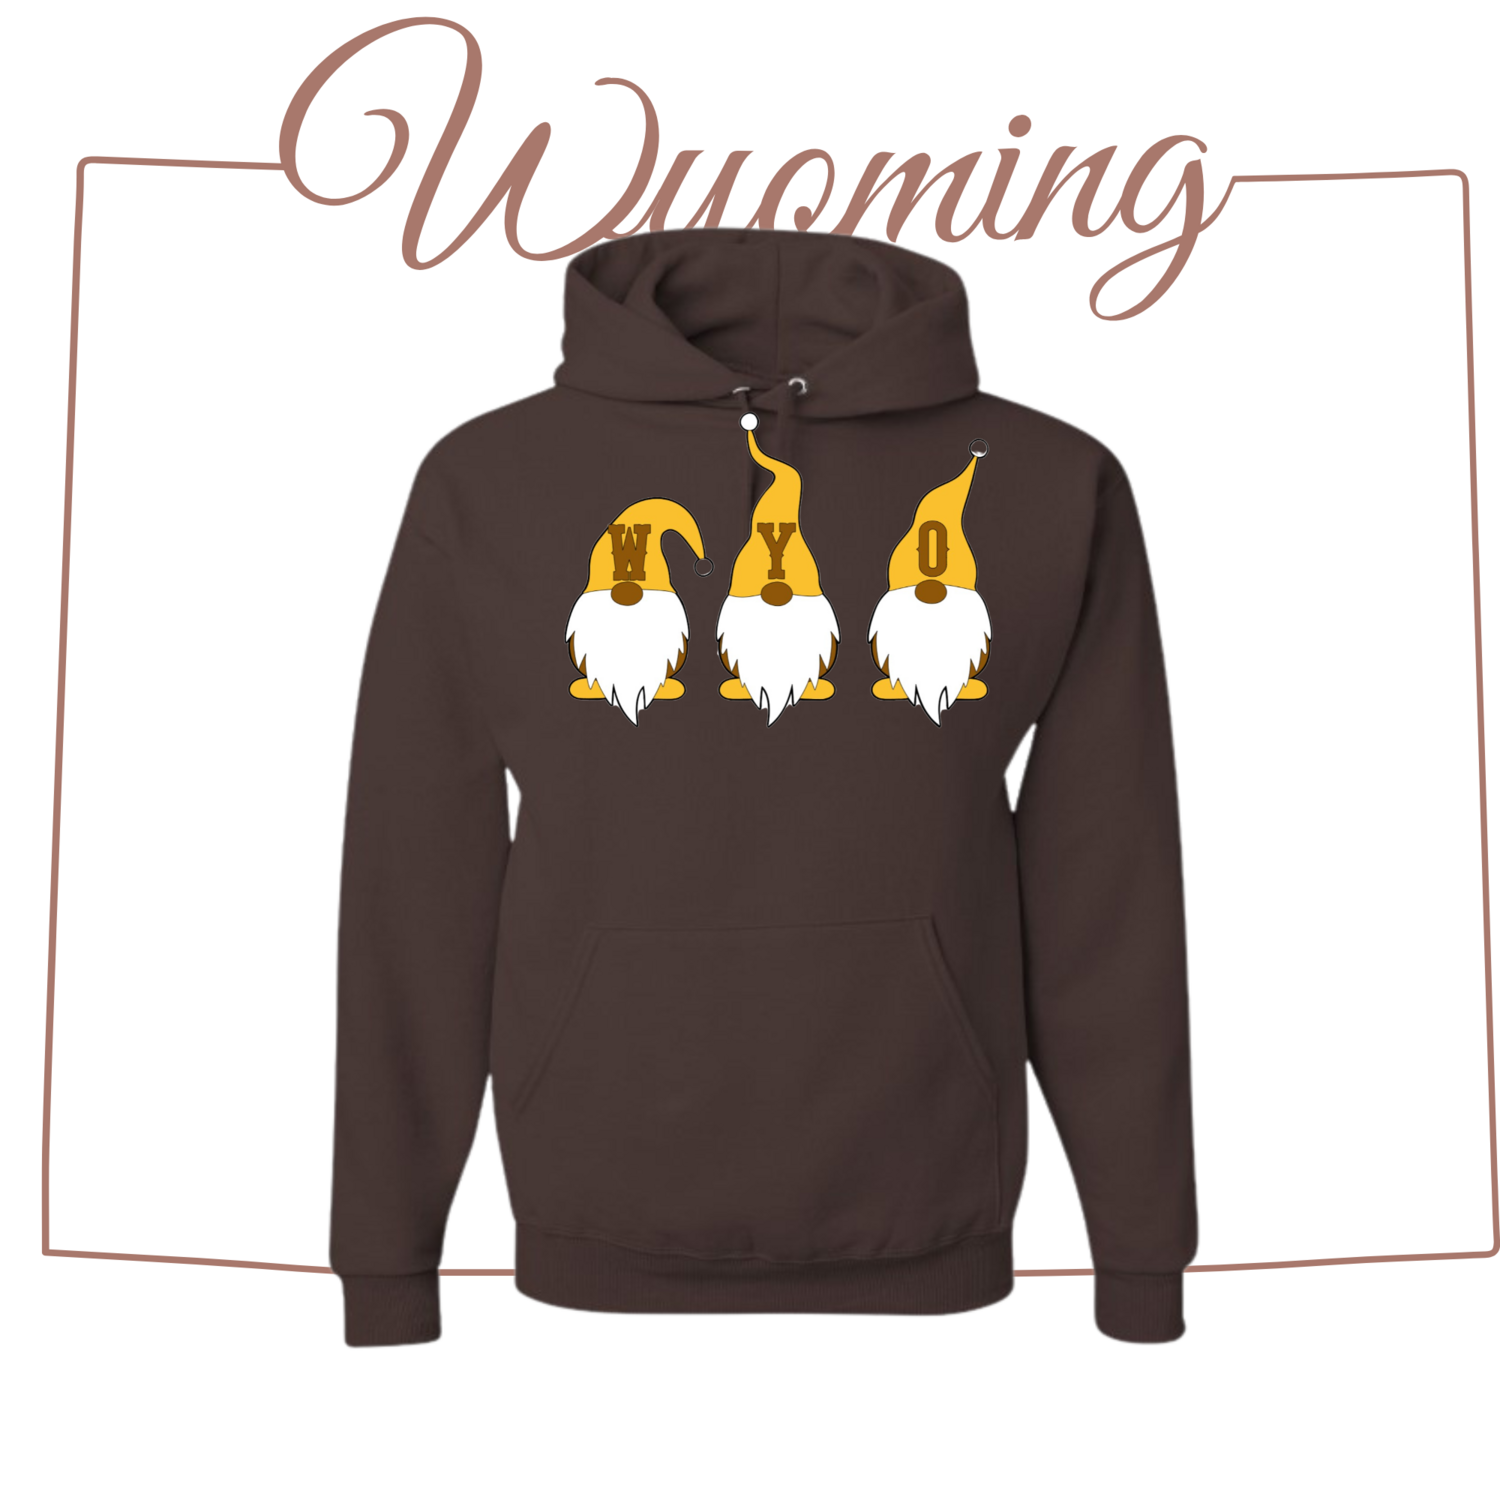 Wyoming Gnome Sweatshirt Unisex